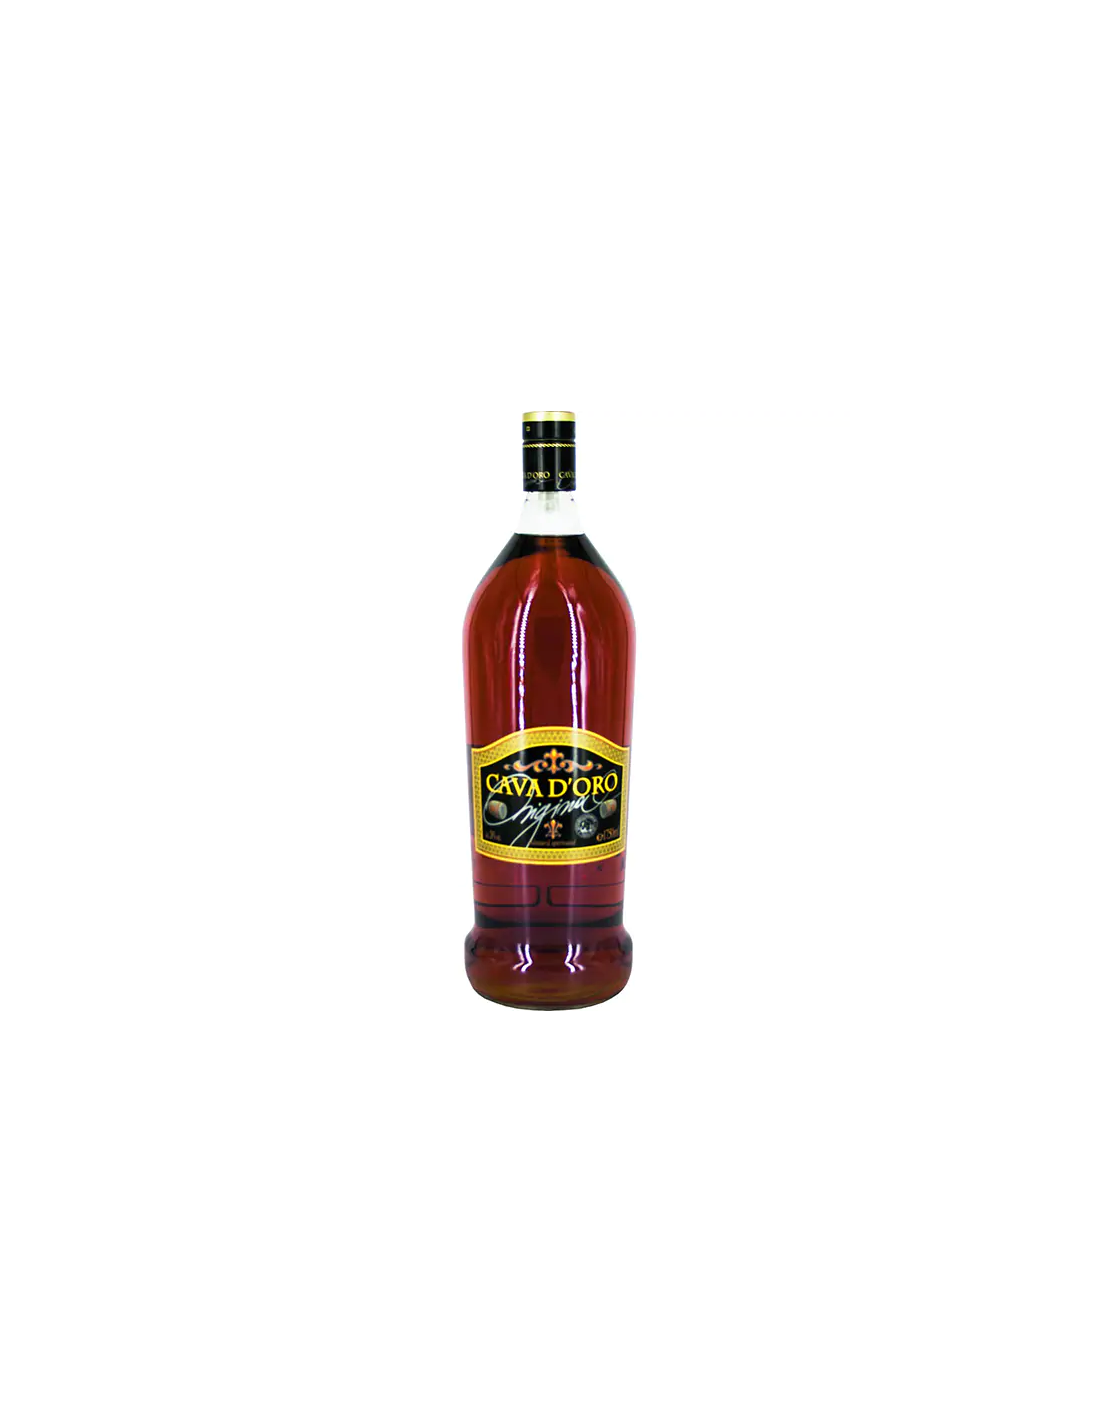 Brandy Cava D’oro, 28% alc., 1.75L alcooldiscount.ro